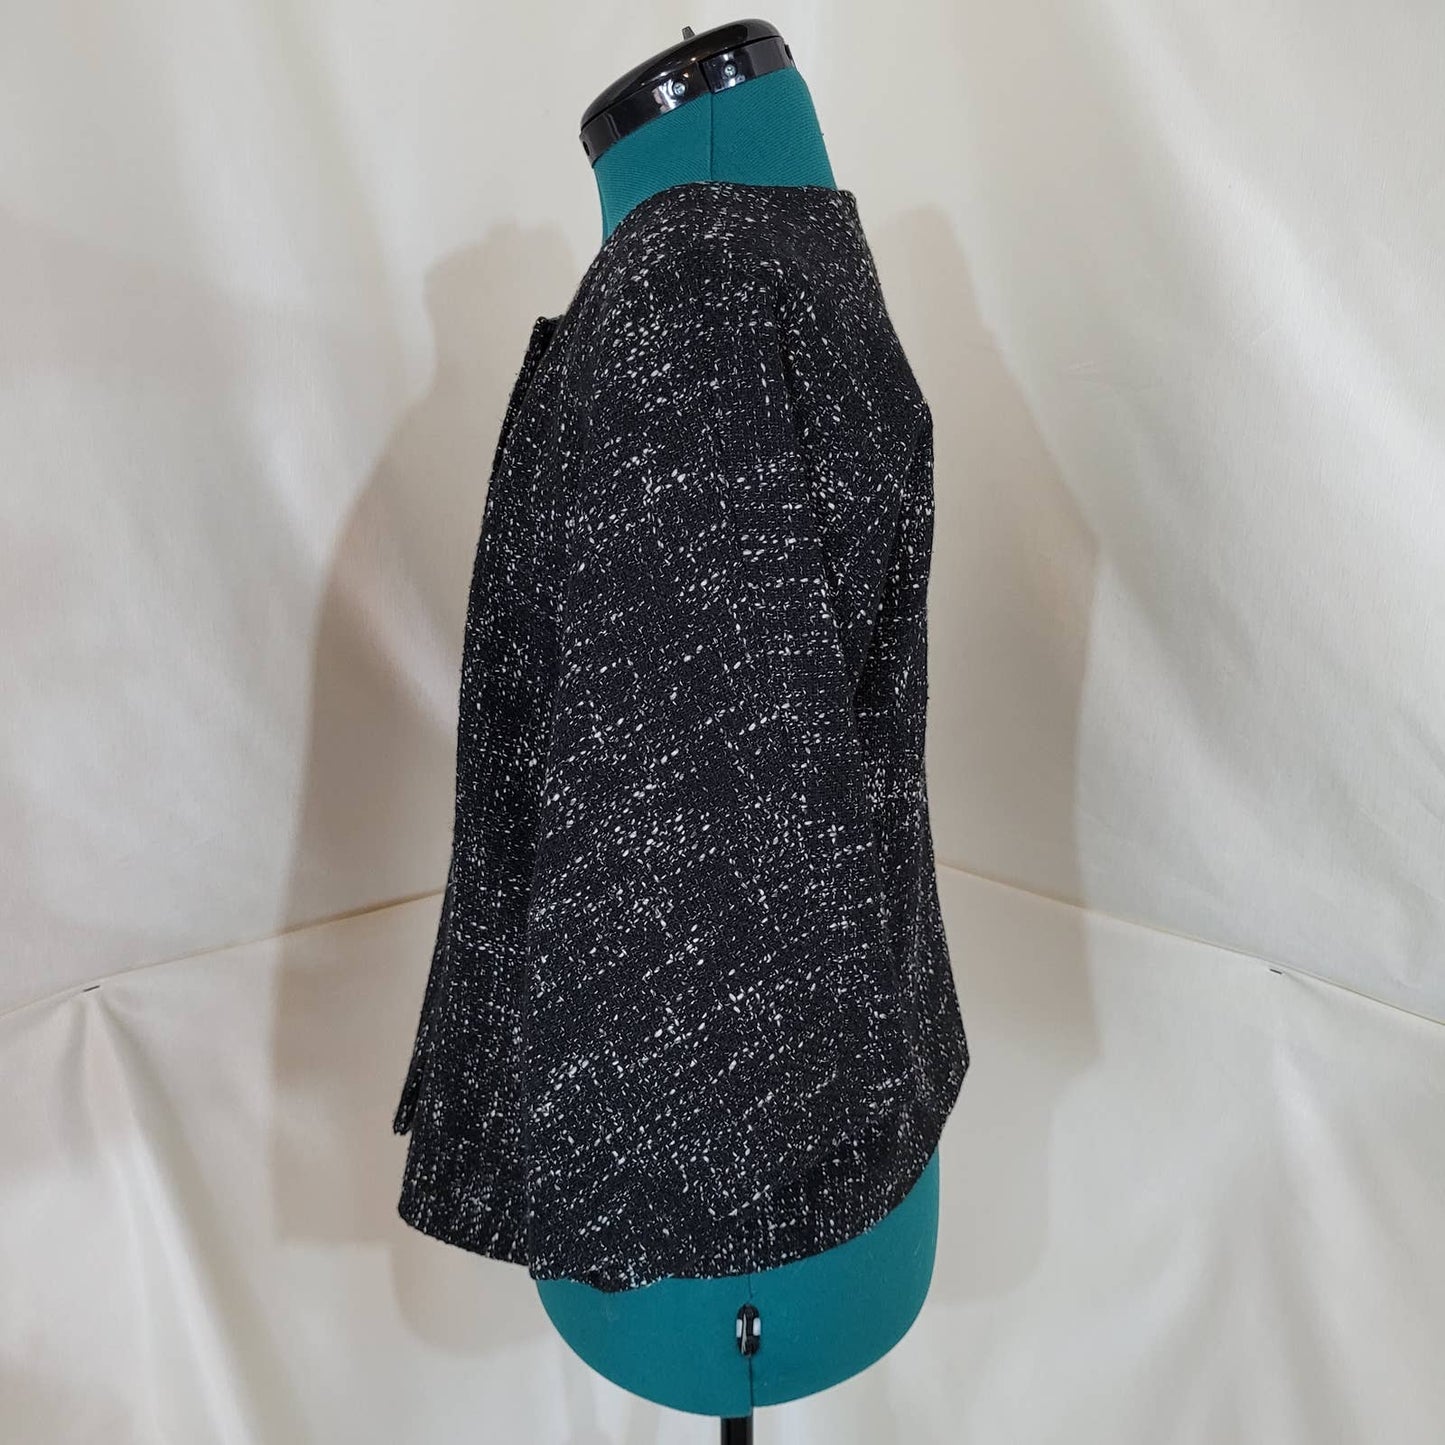 Anne Klein Black Button Up Tweed Blazer Jacket - Size 10